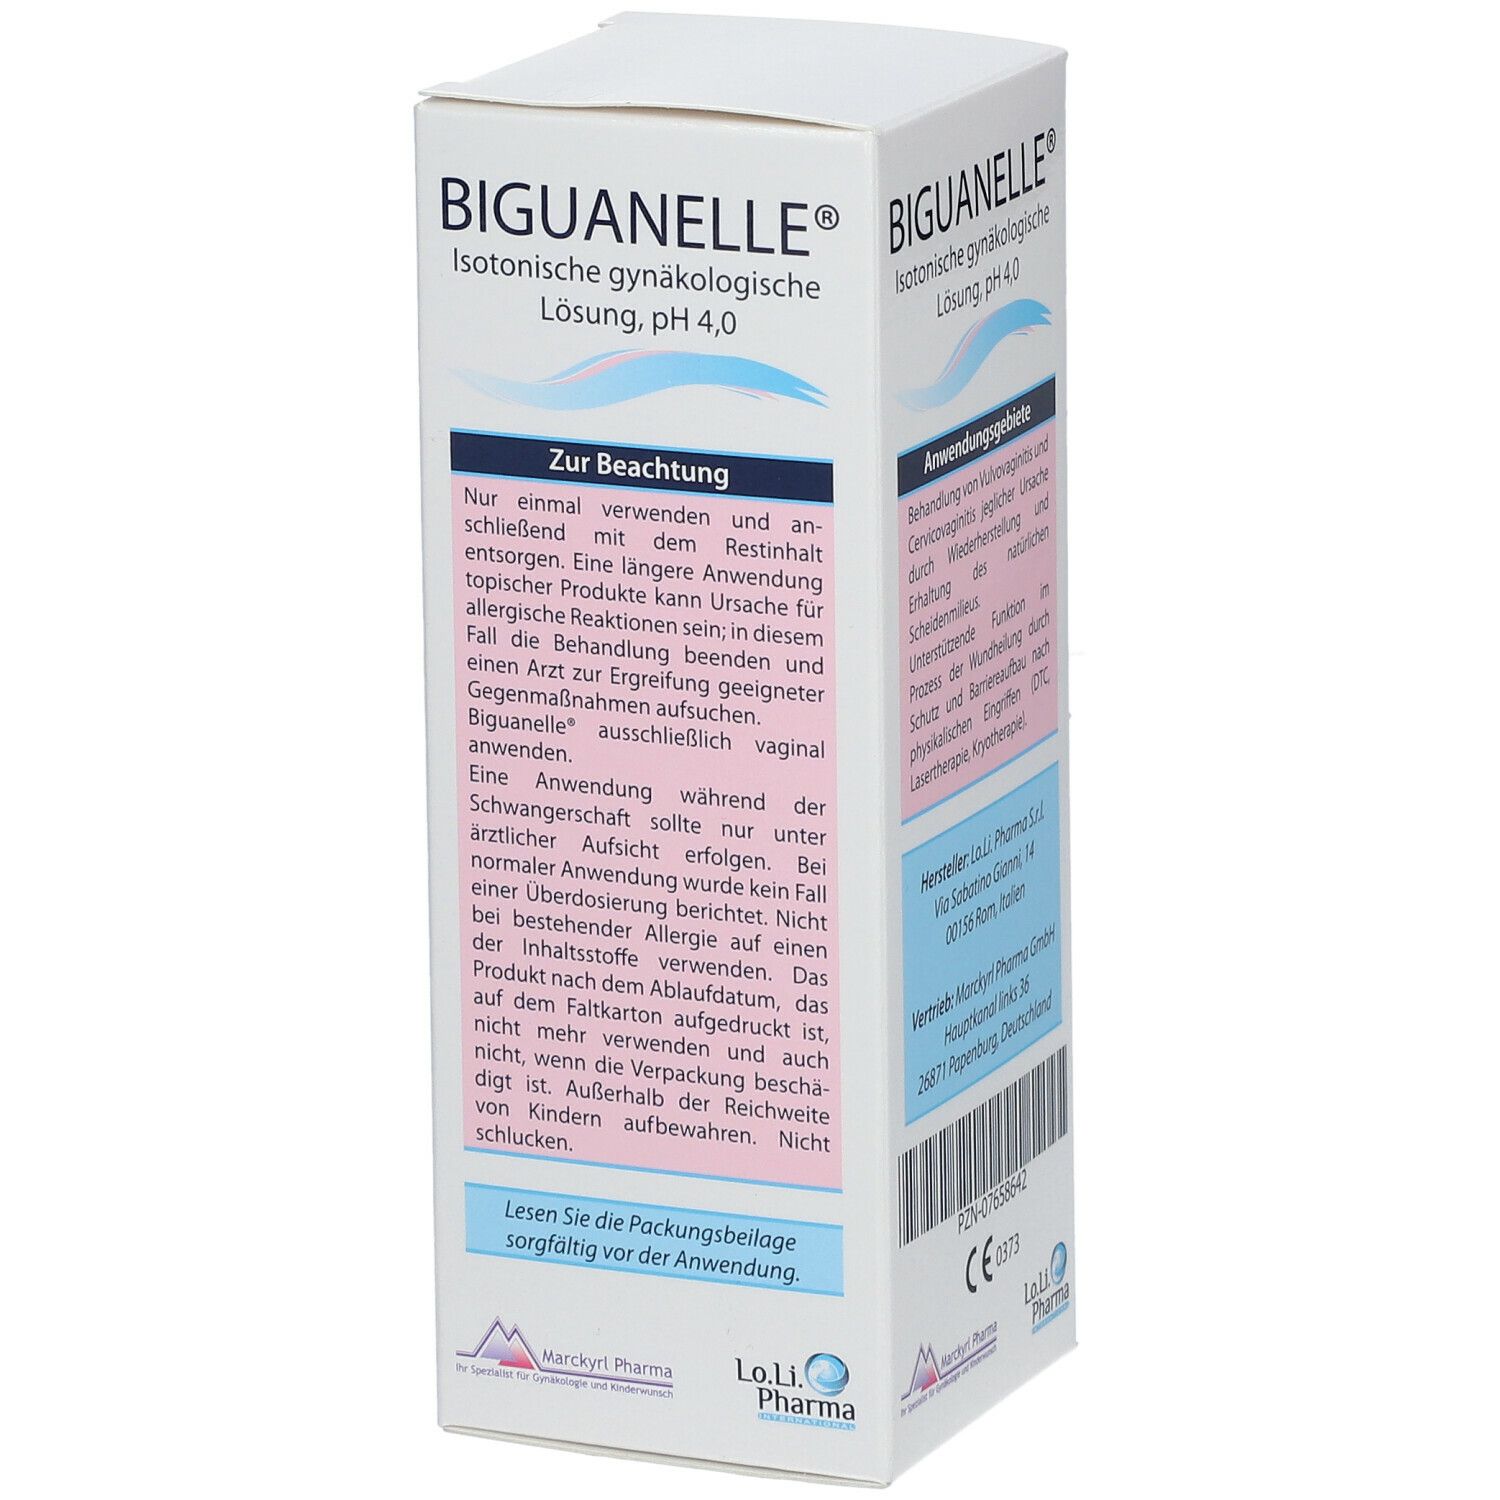 BIGUANELLE® Isotonische gynäkologische Lösung pH 4,0